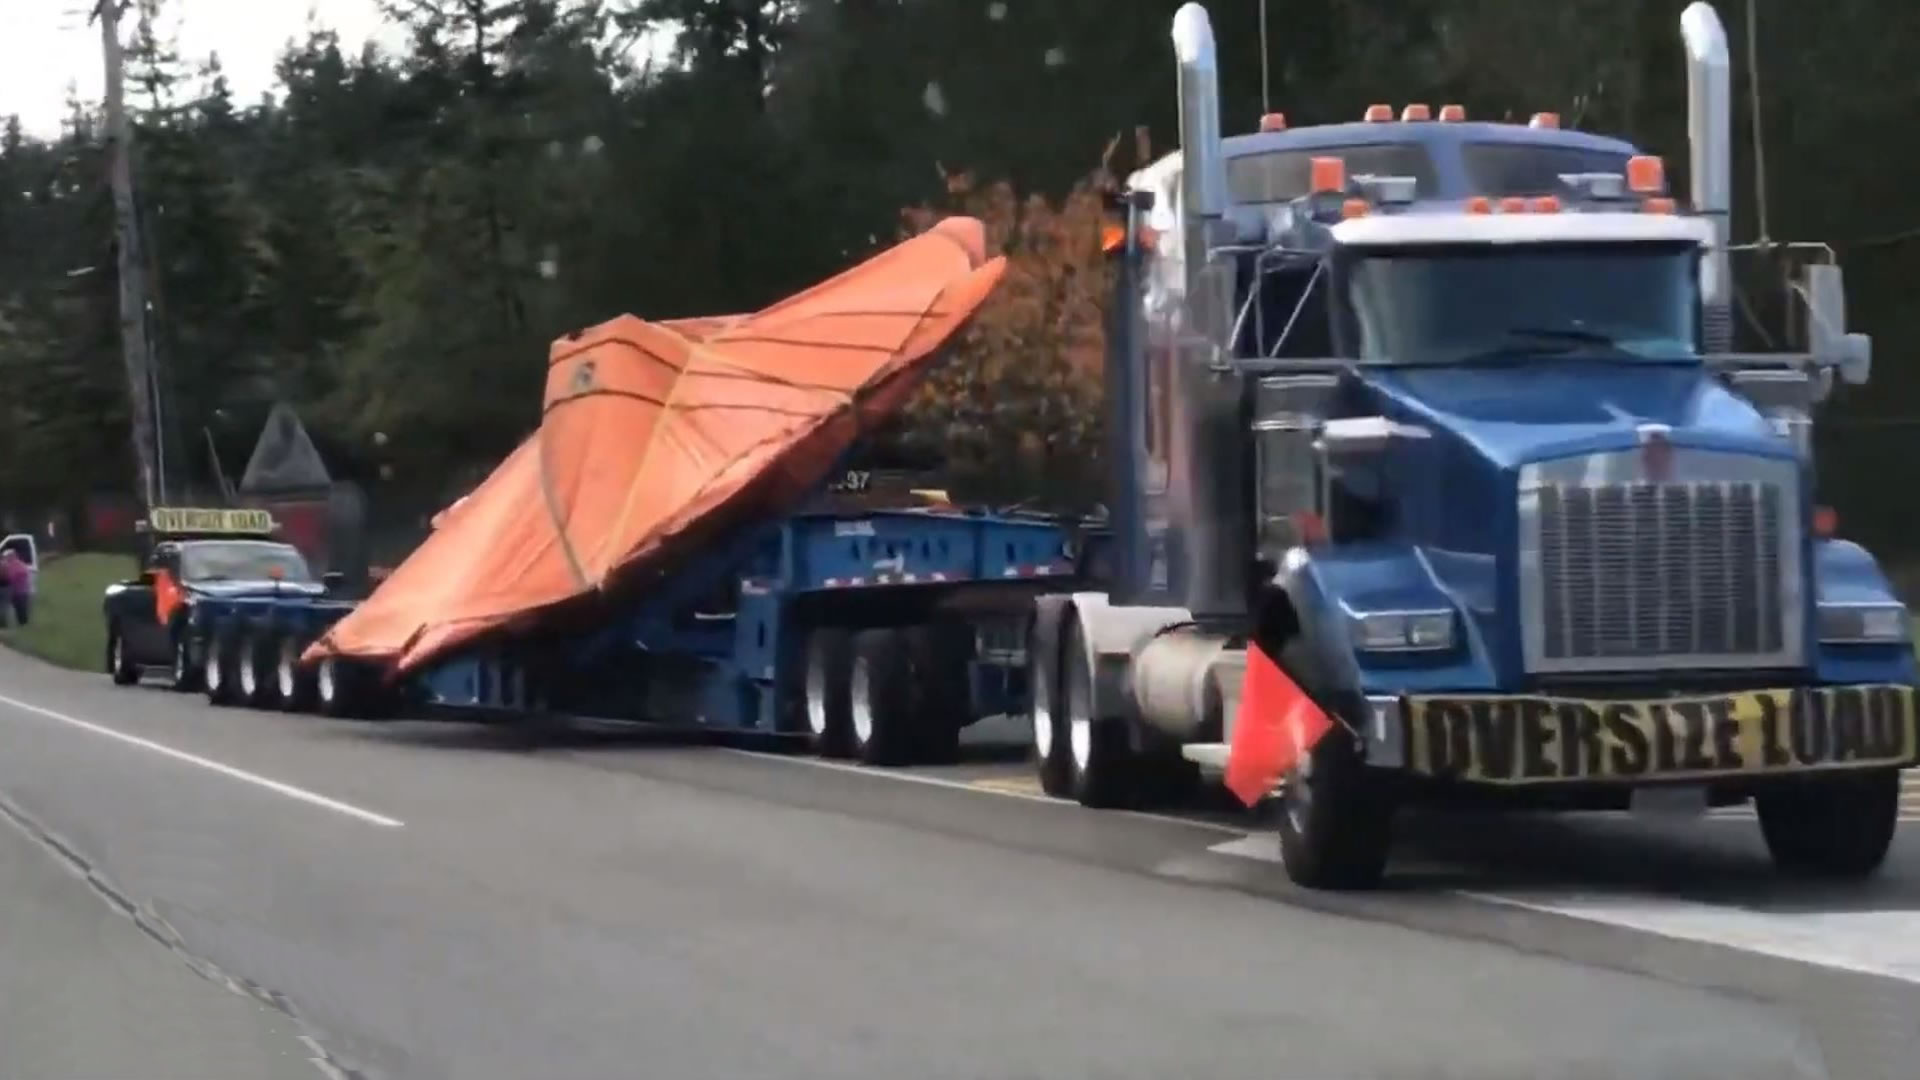 Aparente Nave «No Identificada» transportada en camión es grabada por testigo (VÍDEO)